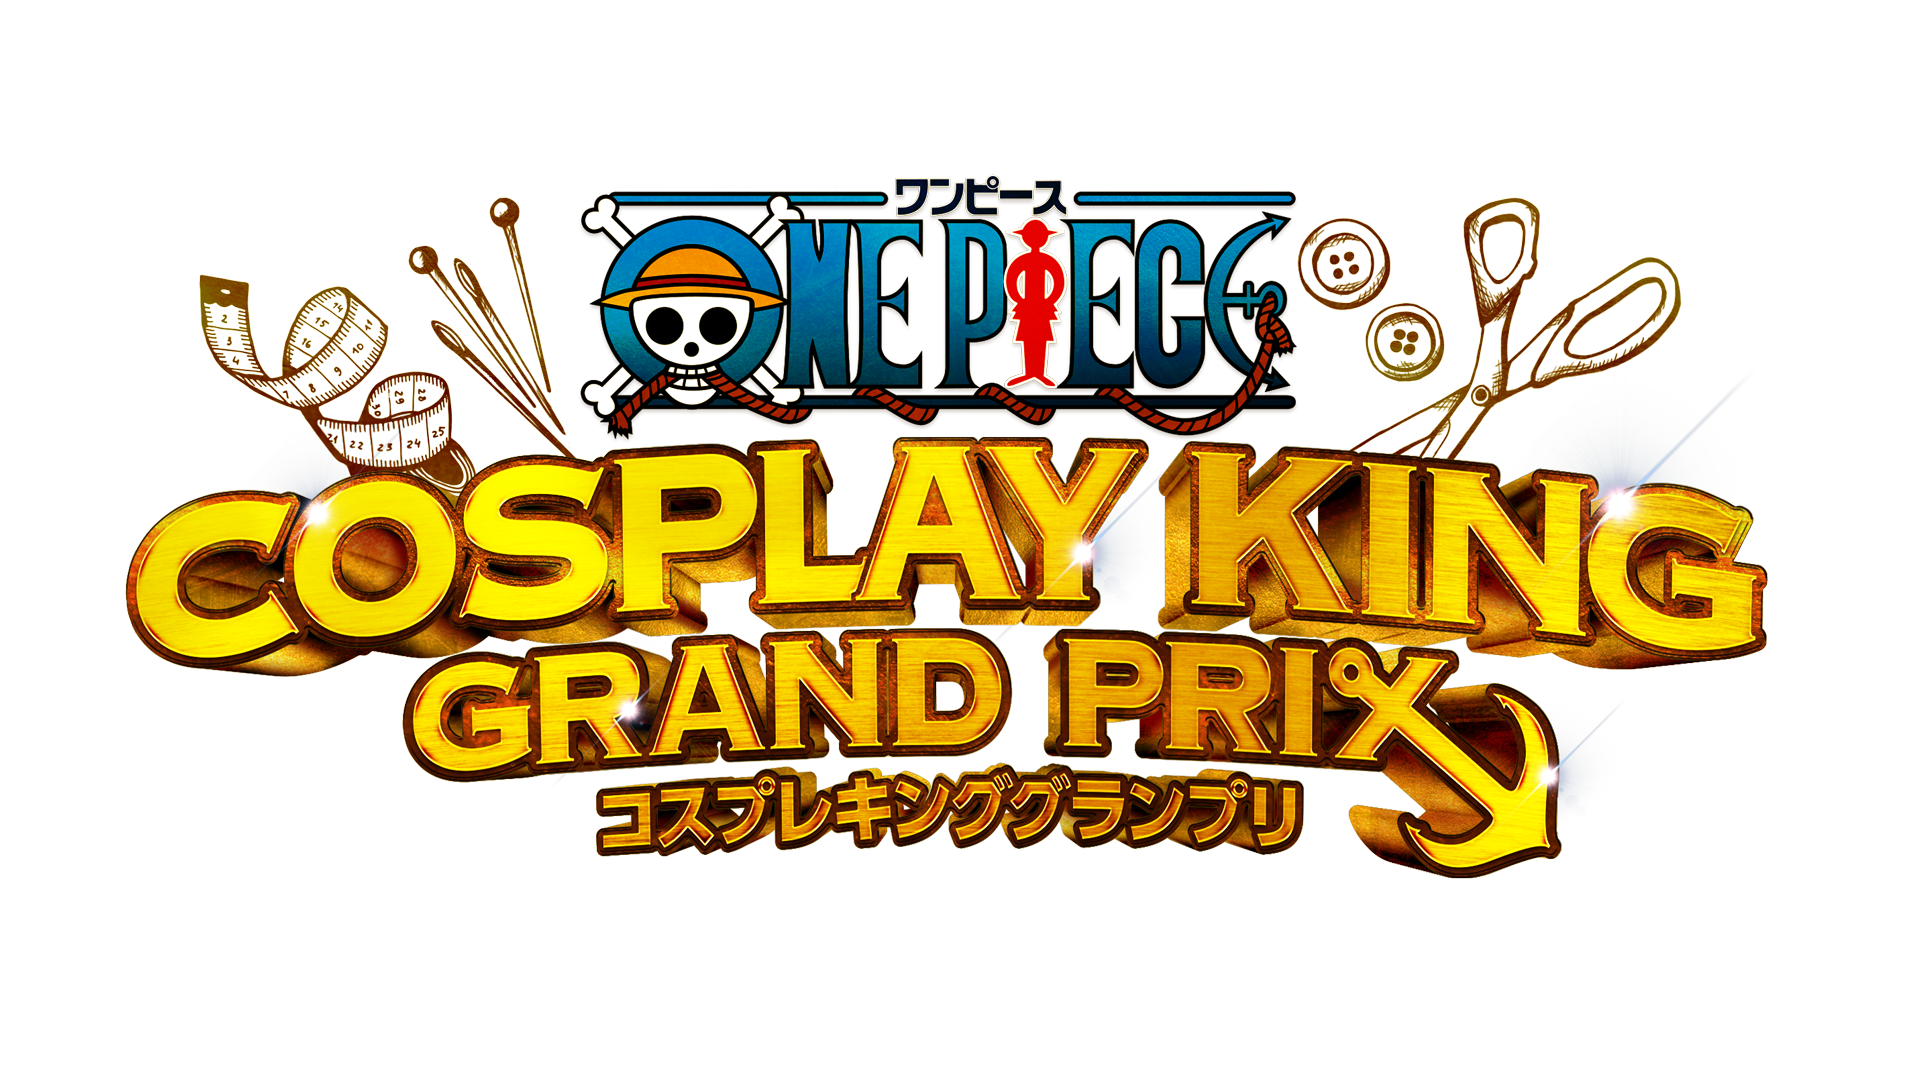 プレスリリース Tvアニメ One Piece 放送周年記念イベント One Piece Cosplay King Grand Prix 開催のお知らせ Press 毎日新聞